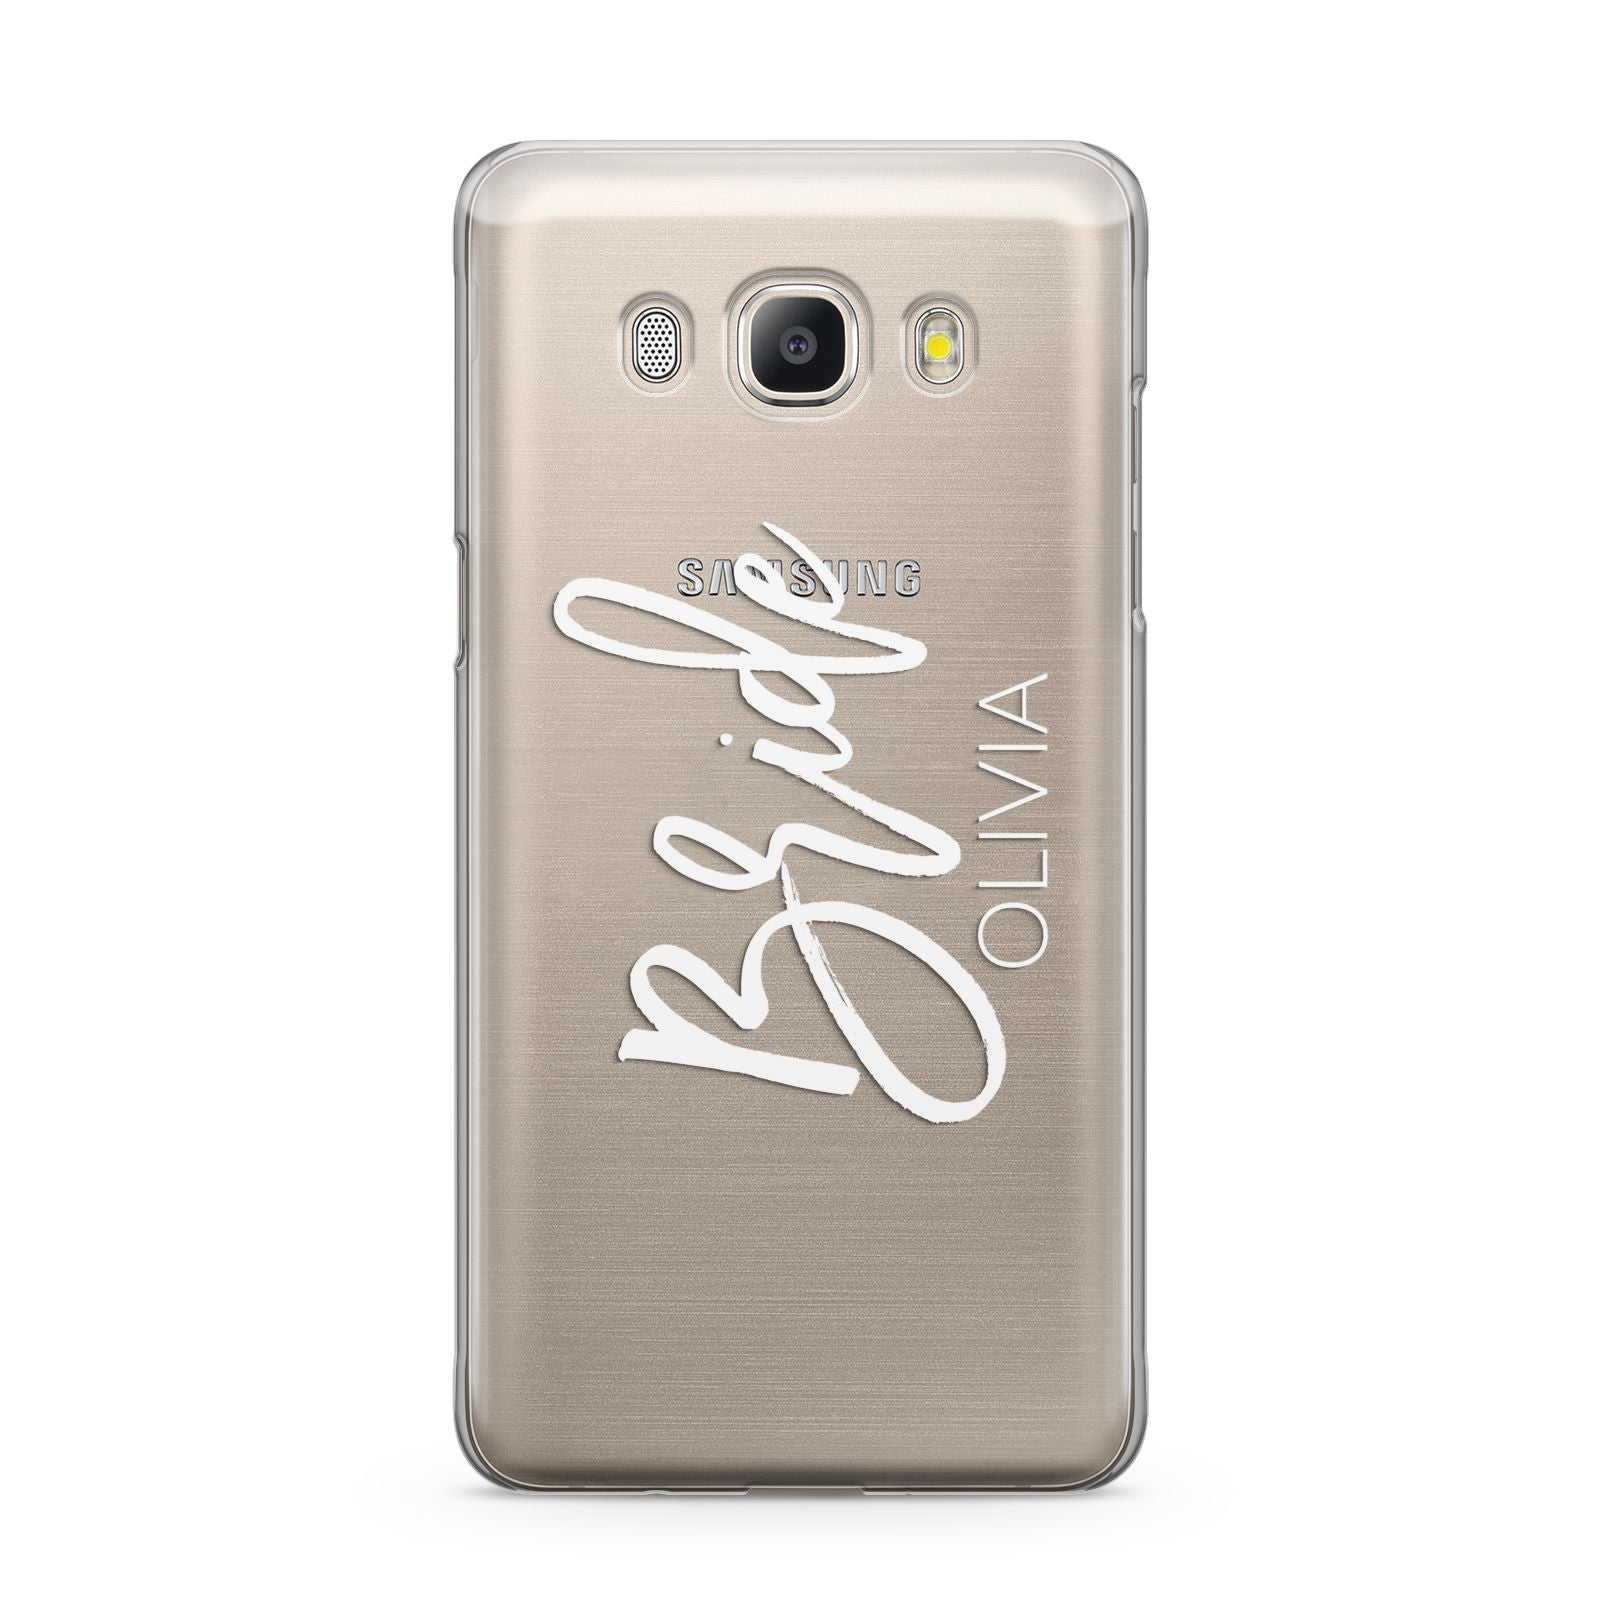 Personalised Bride Samsung Galaxy J5 2016 Case